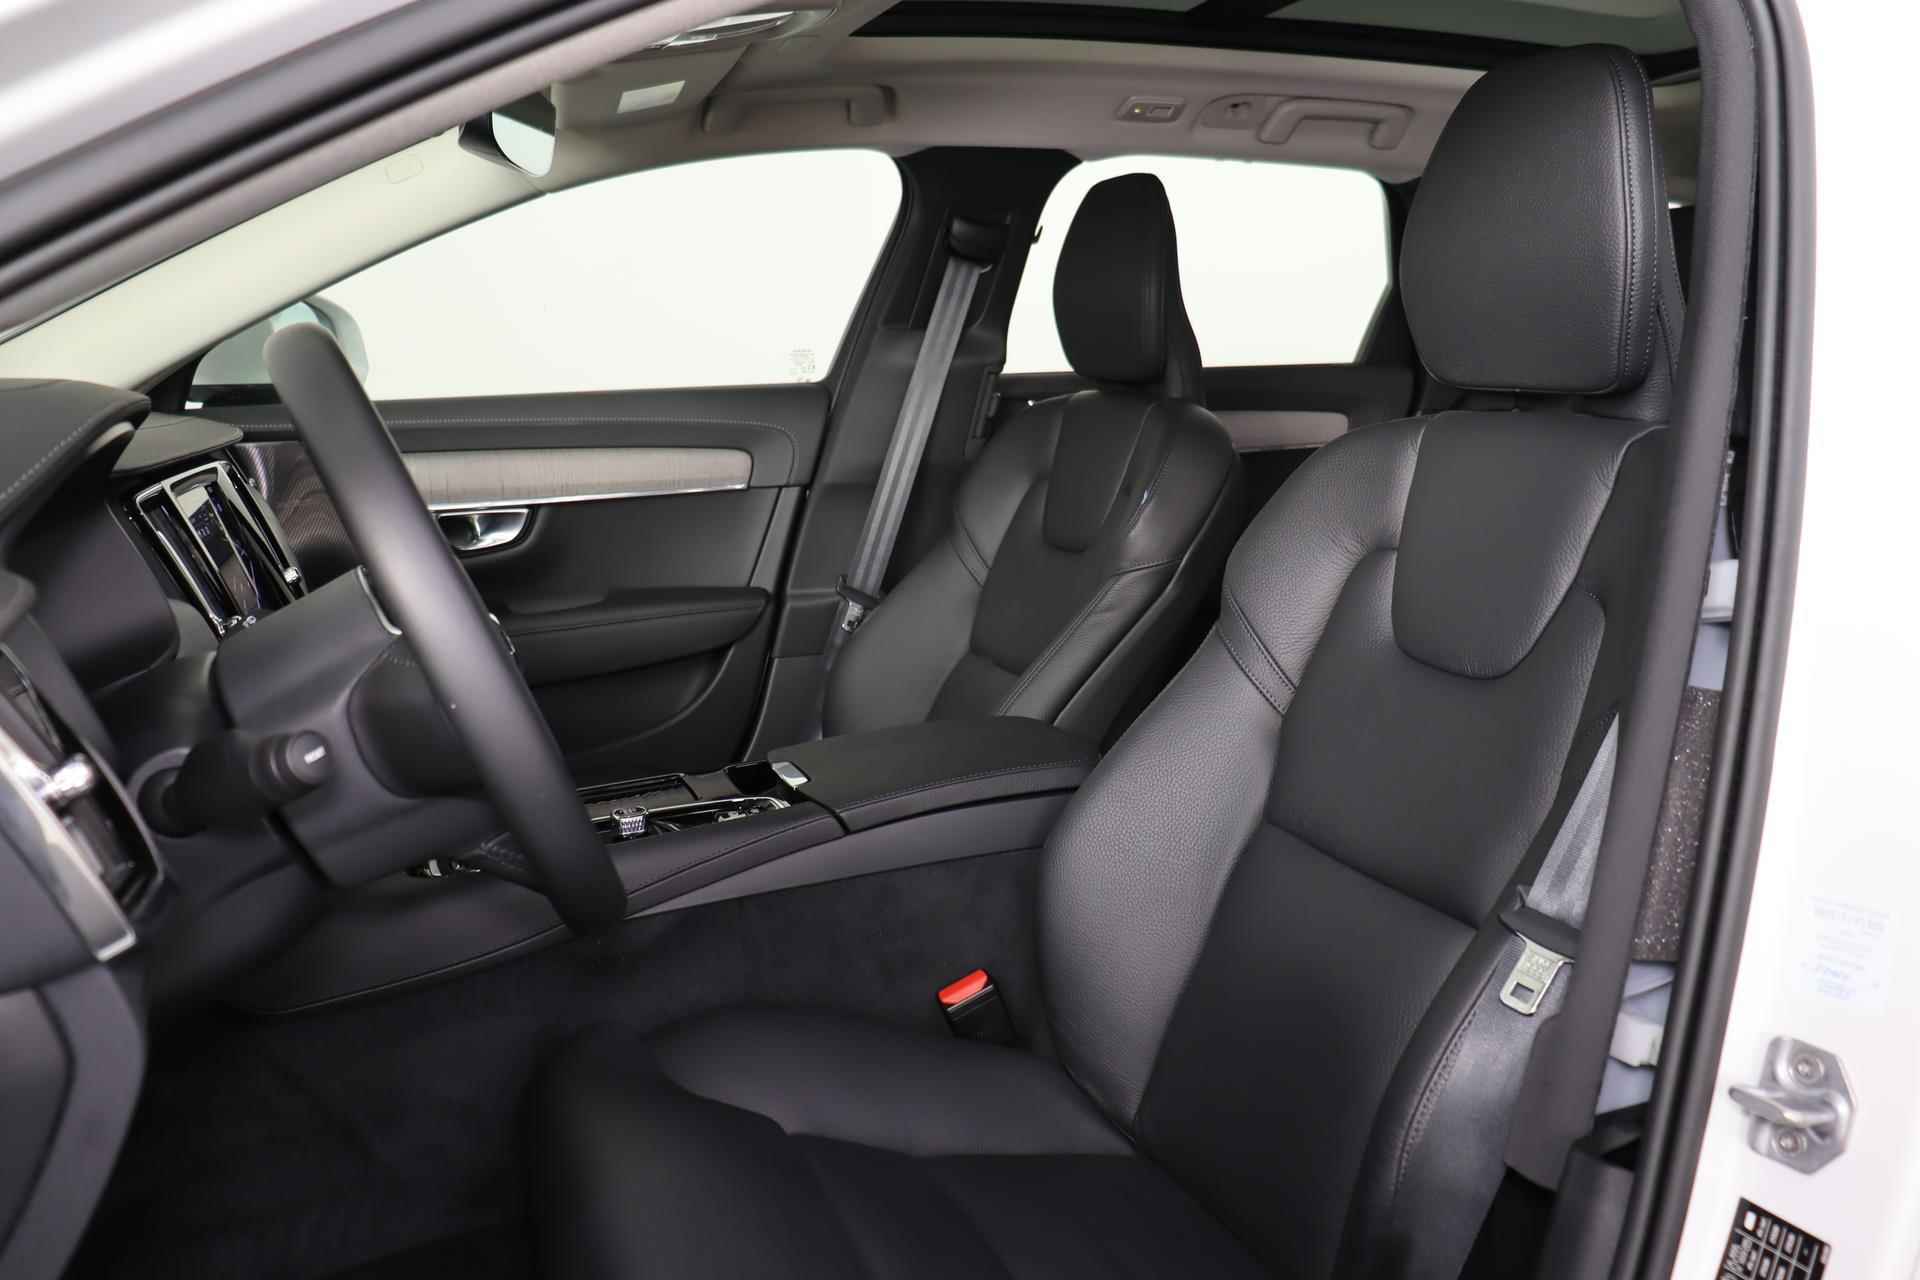 Volvo V90 T6 AWD Recharge Inscription - Panorama/schuifdak - IntelliSafe Assist & Surround - Harman/Kardon audio - Adaptieve LED koplampen - Parkeercamera achter - Verwarmde voorstoelen & stuur - Parkeersensoren voor & achter - Elektr. bedienb. voorstoelen met geheugen - Standkachel - 19' LMV - 27/33